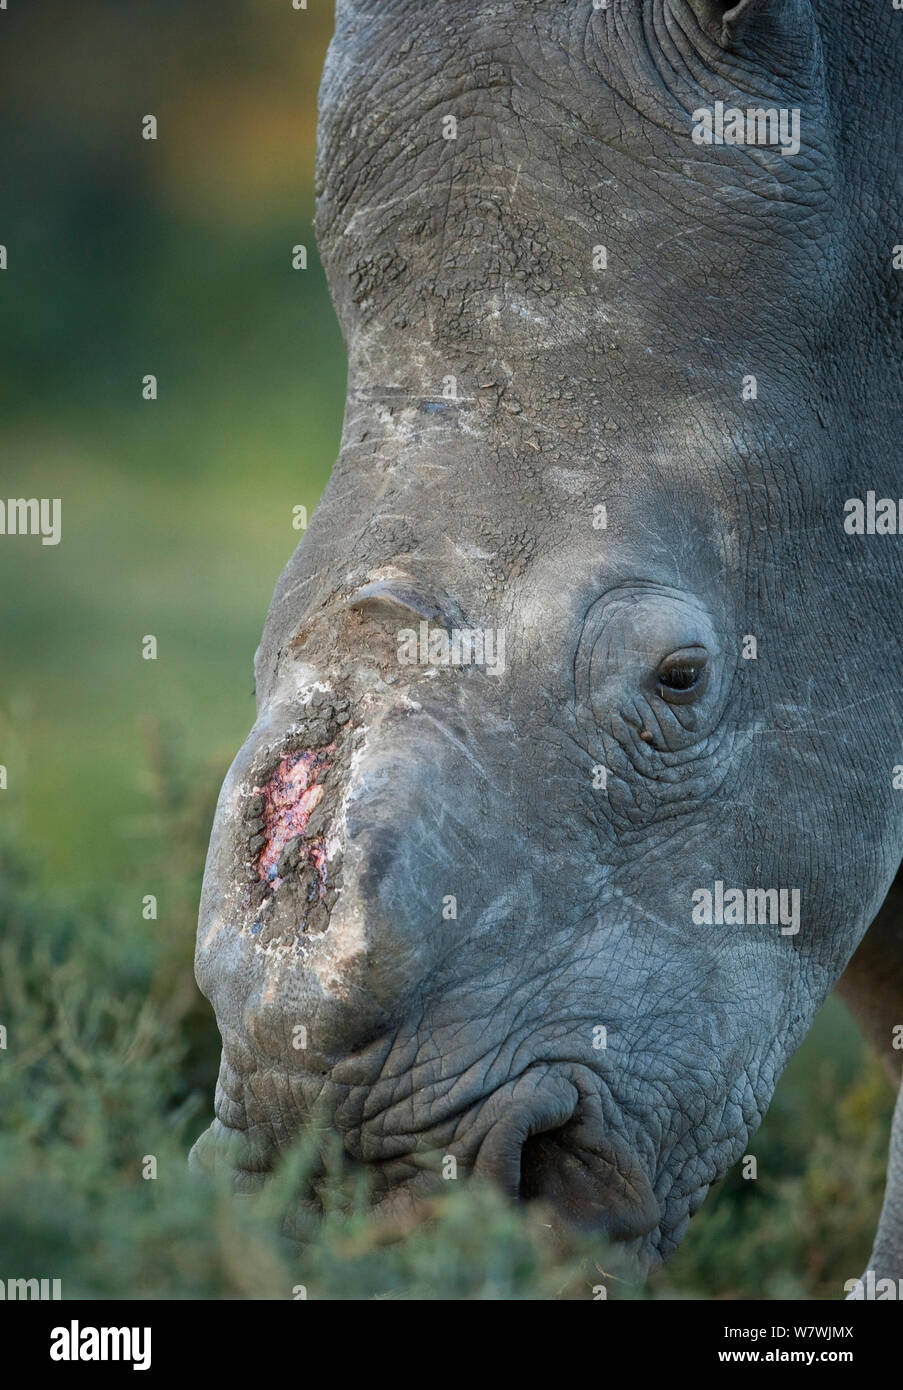 Thandi la femmina rinoceronte bianco del Sud (Ceratotherium simum) che ha perso il suo corno in un attacco da parte dei bracconieri, Kariega Game Reserve, Eastern Cape Province, Sud Africa - Ritratto di testa che mostra avvolto Foto Stock